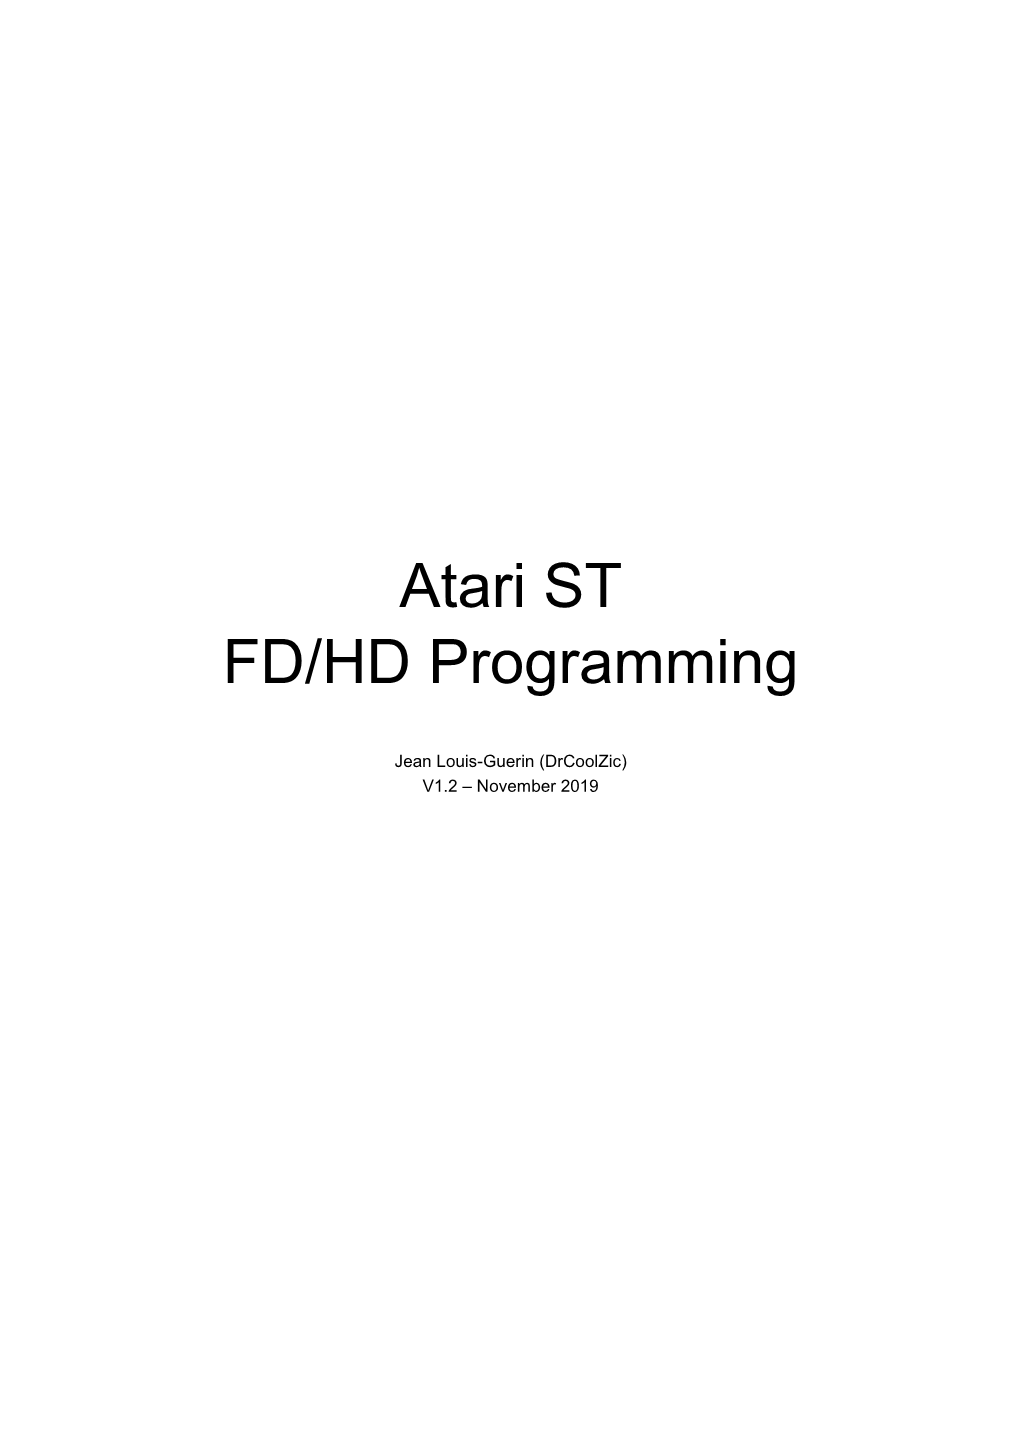 Atari ST FD / HD Programming